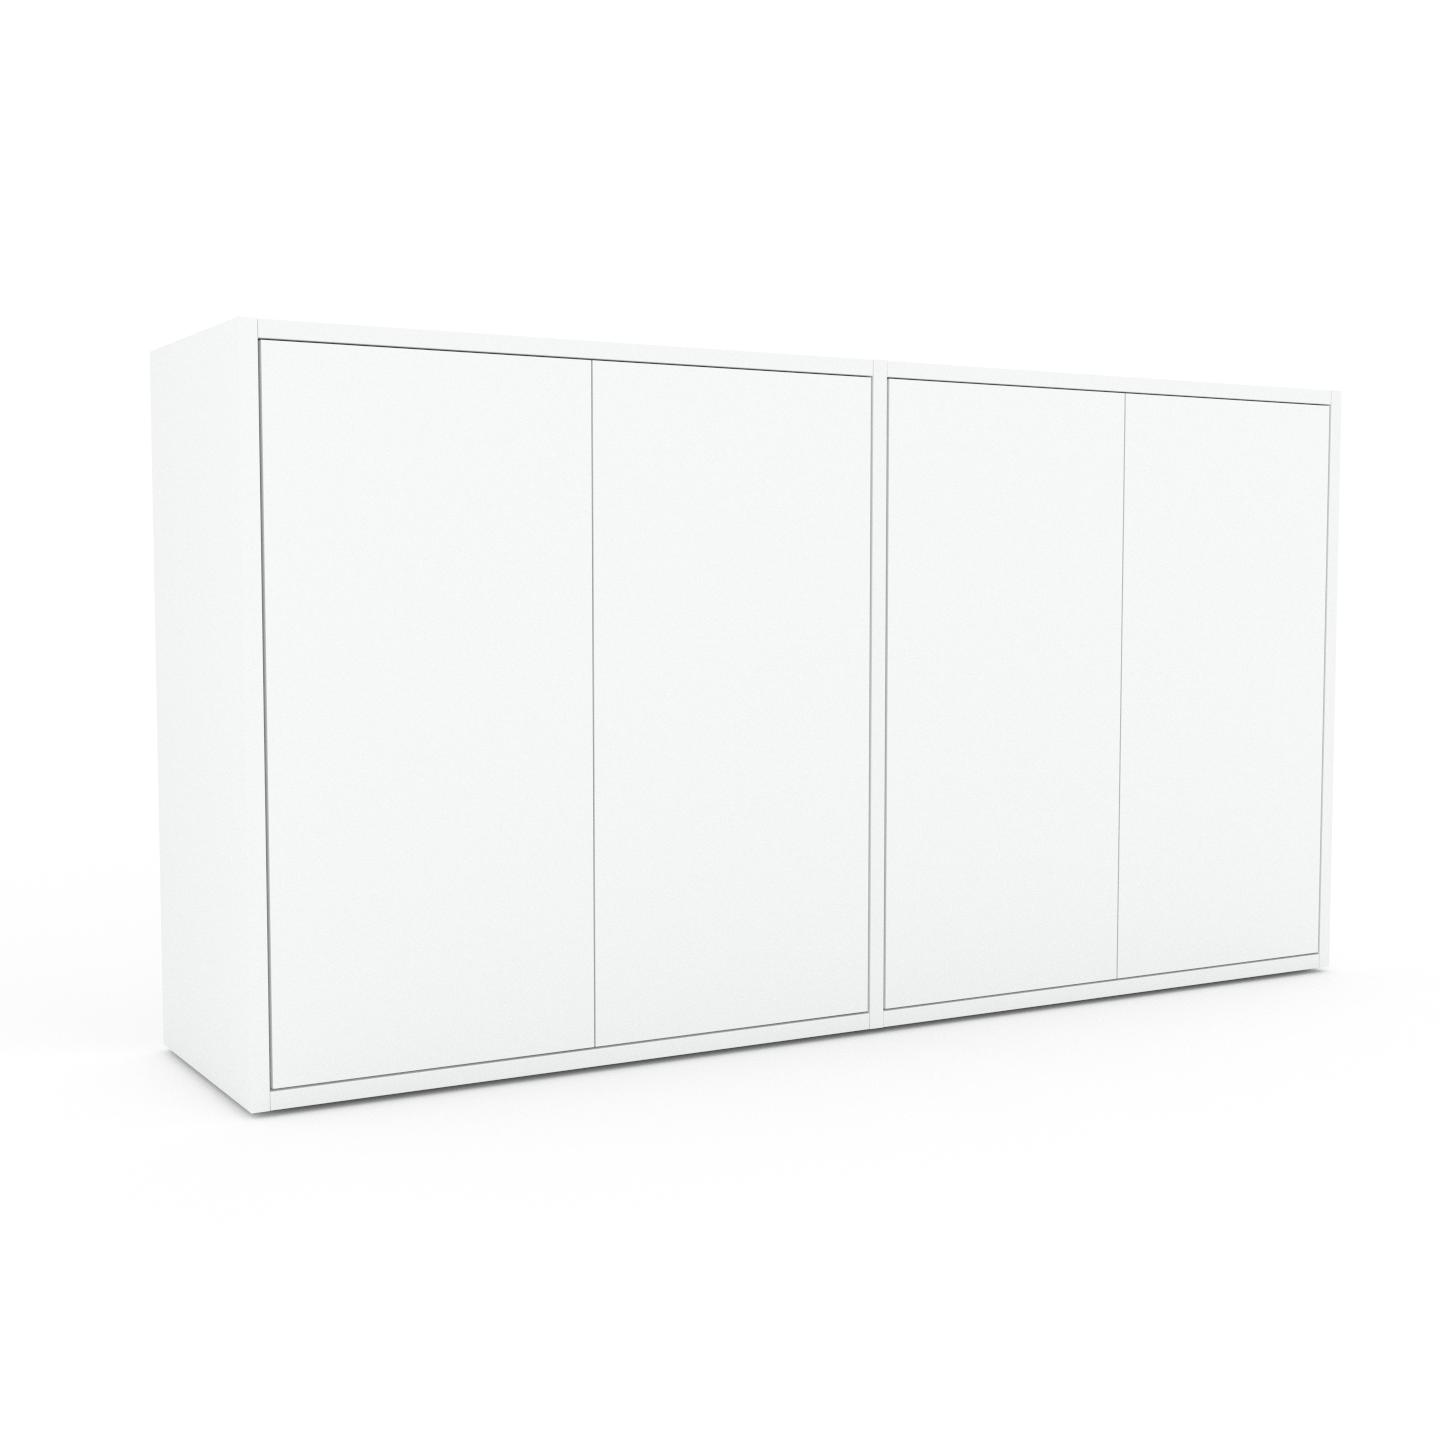 MYCS Bücherregal Weiß - Modernes Regal für Bücher: Türen in Weiß - 152 x 80 x 35 cm, Individuell konfigurierbar